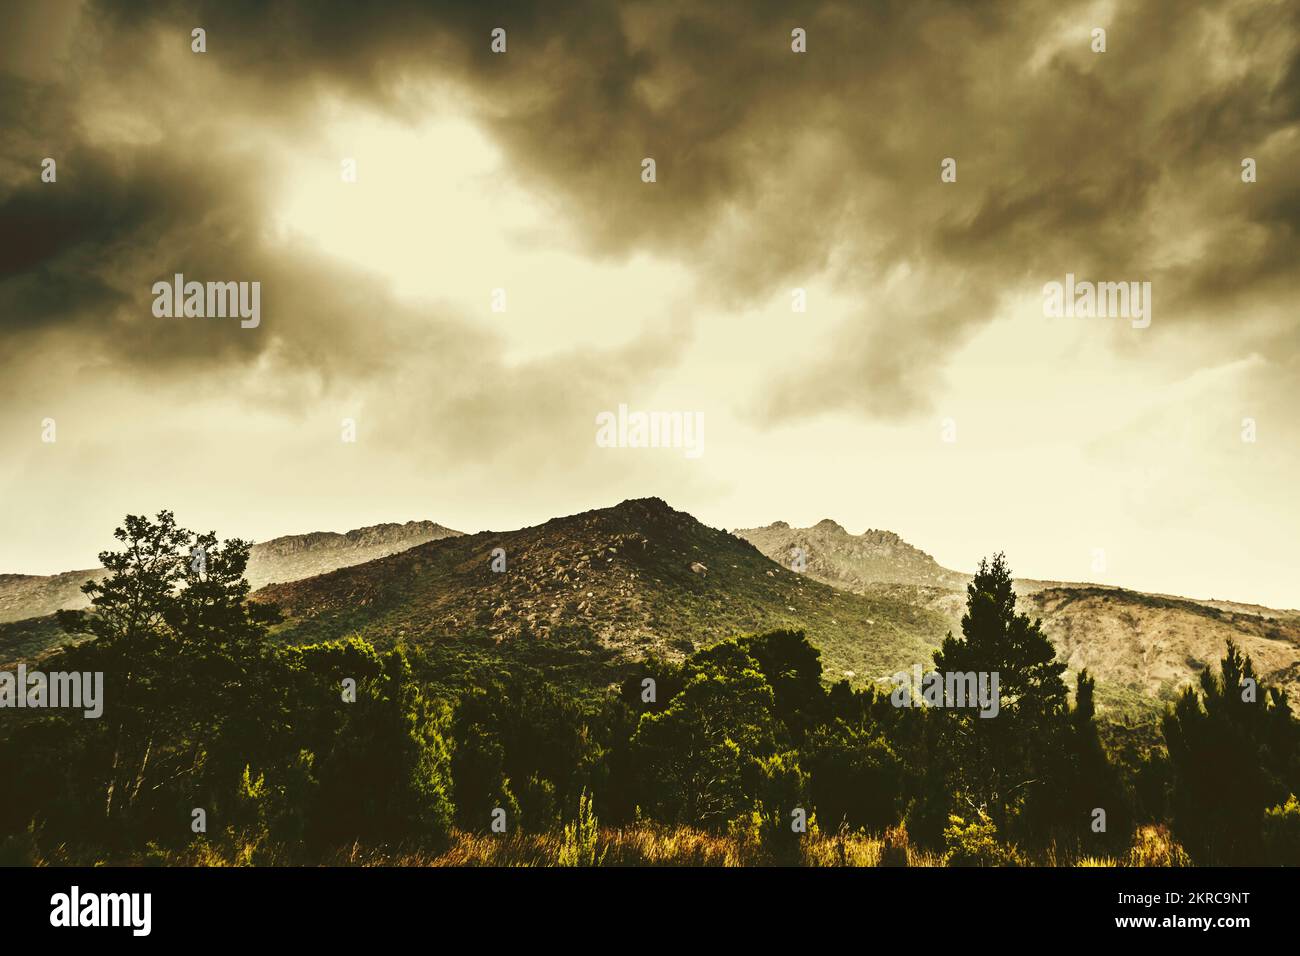 Instagram-Stil Bild von Weitwinkel Bergketten mit ländlichen Forstwirtschaft Typografie. Gormanston, Tasmanien, Australien Stockfoto